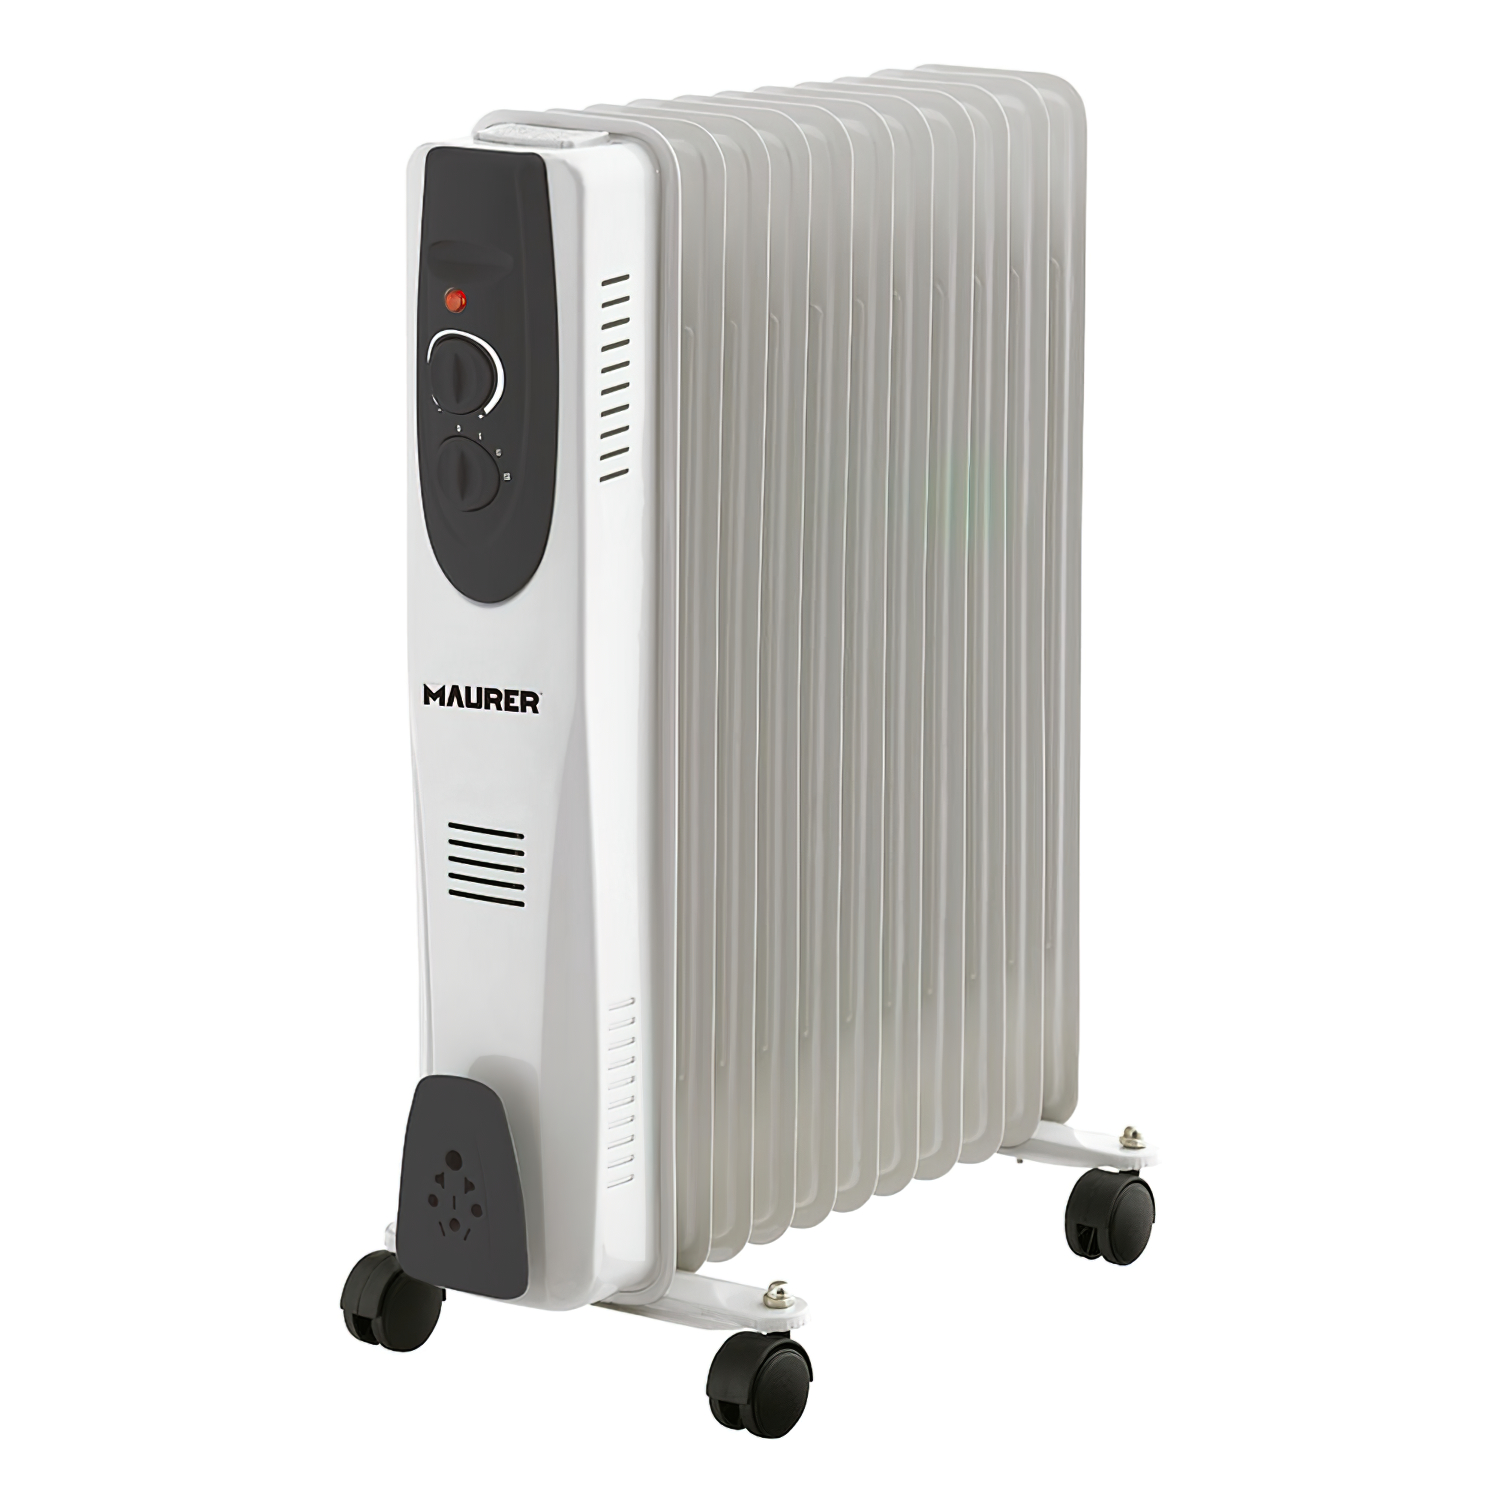 Radiador de Aceite 11 Elementos: Potencia 2500W, Termostato Ambiente, Portátil. ¡Calor eficiente y comodidad en tu hogar! Ideal para invierno.